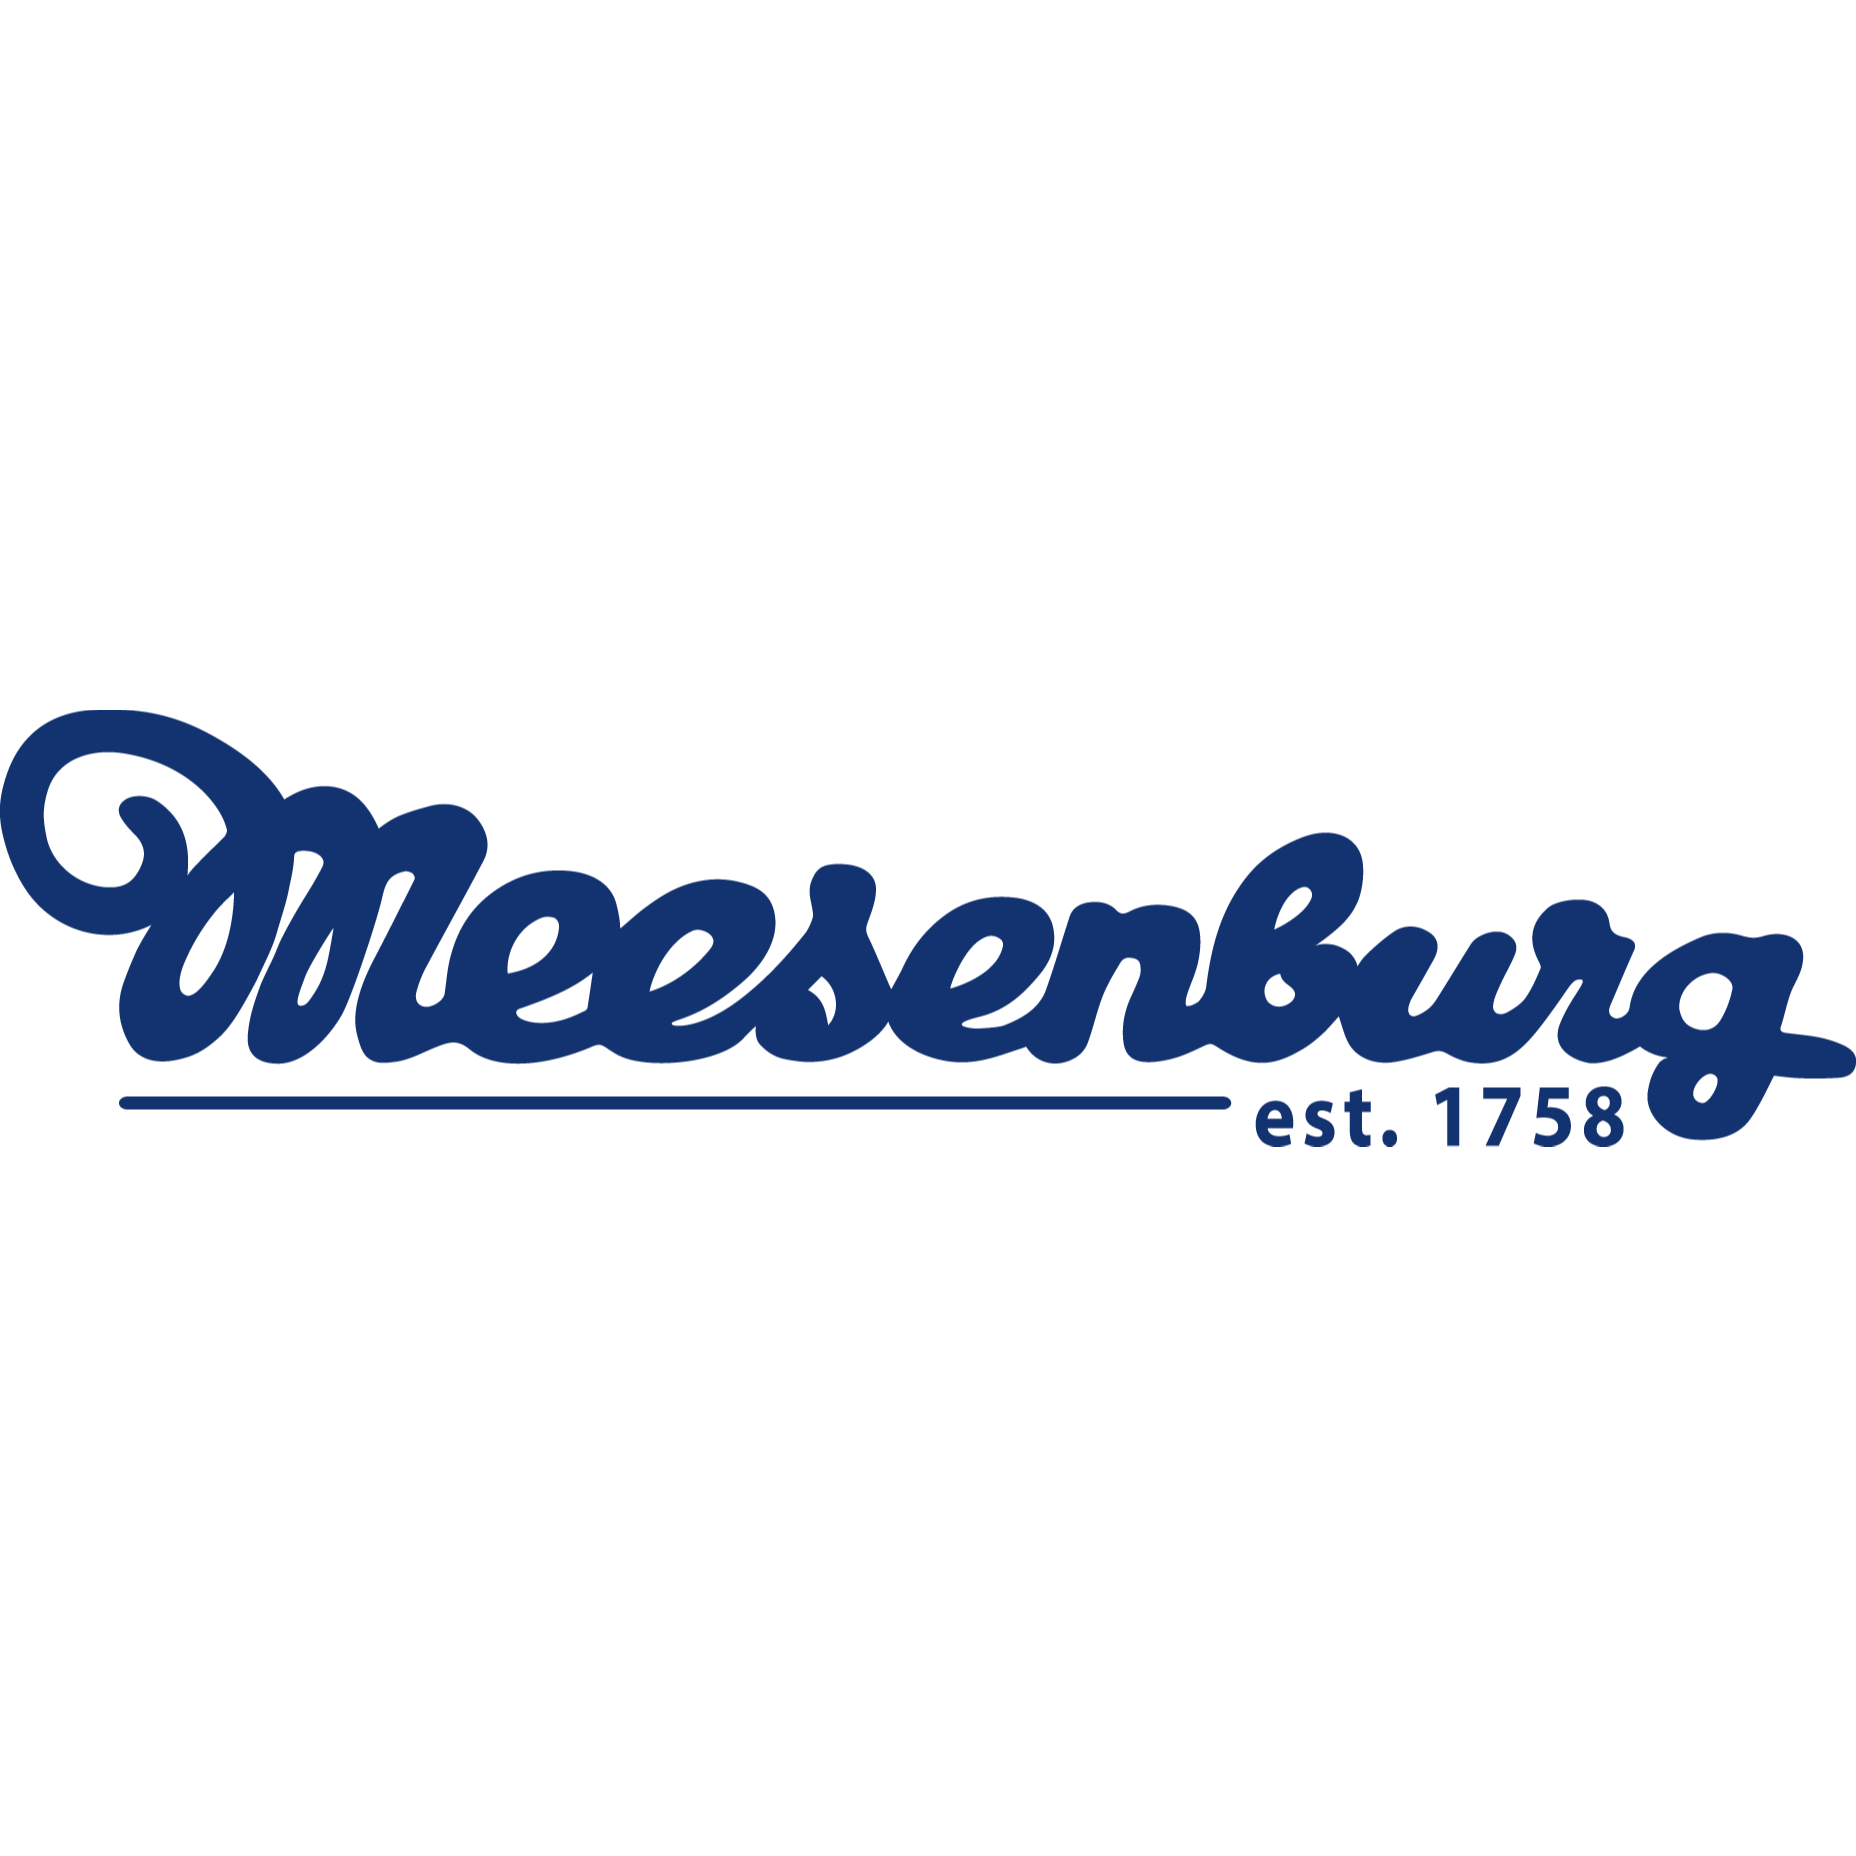 Meesenburg GmbH & Co. KG in Oldenburg  